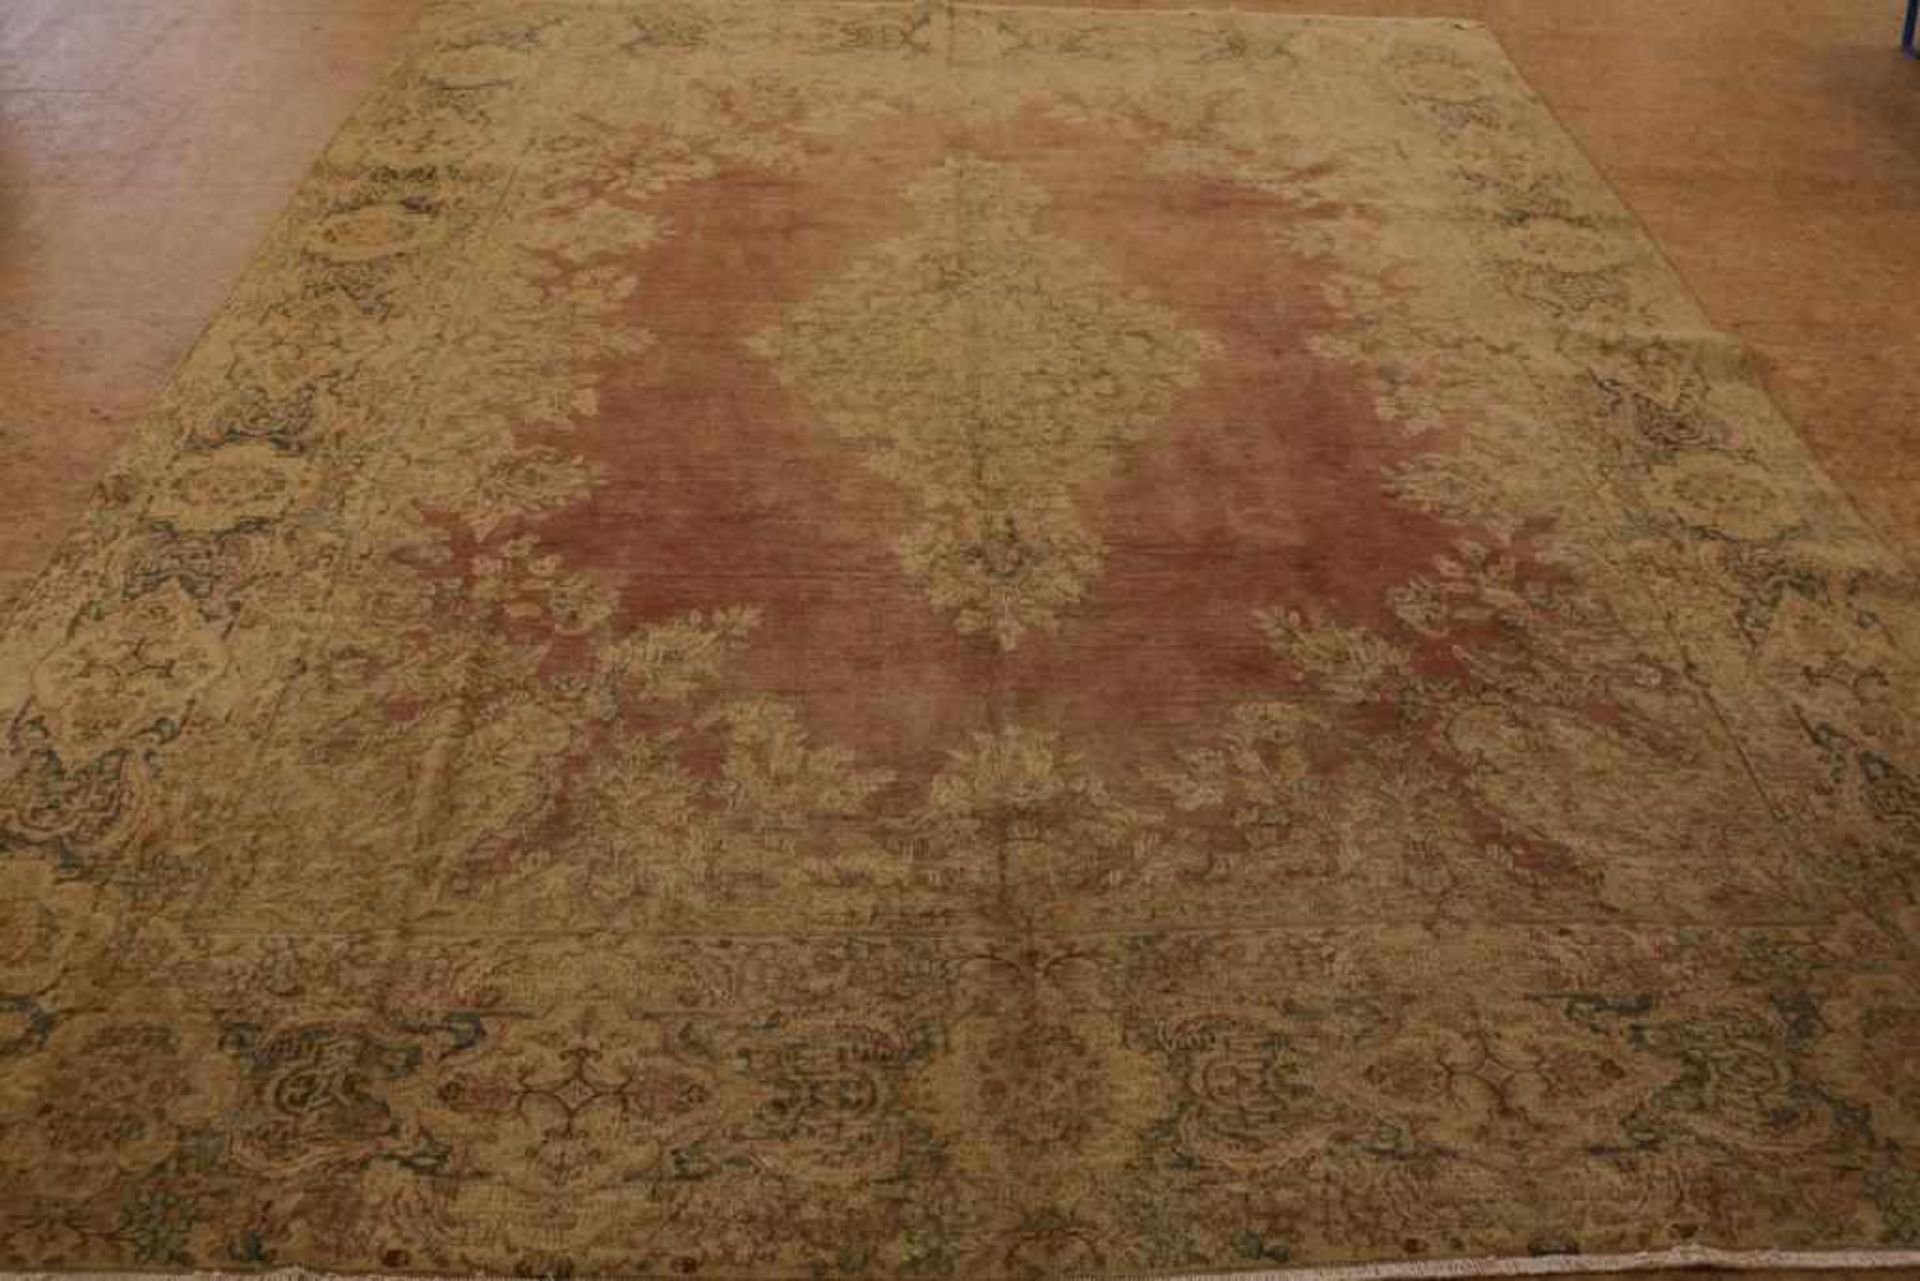 Vintage carpet 397 x 295 cm.